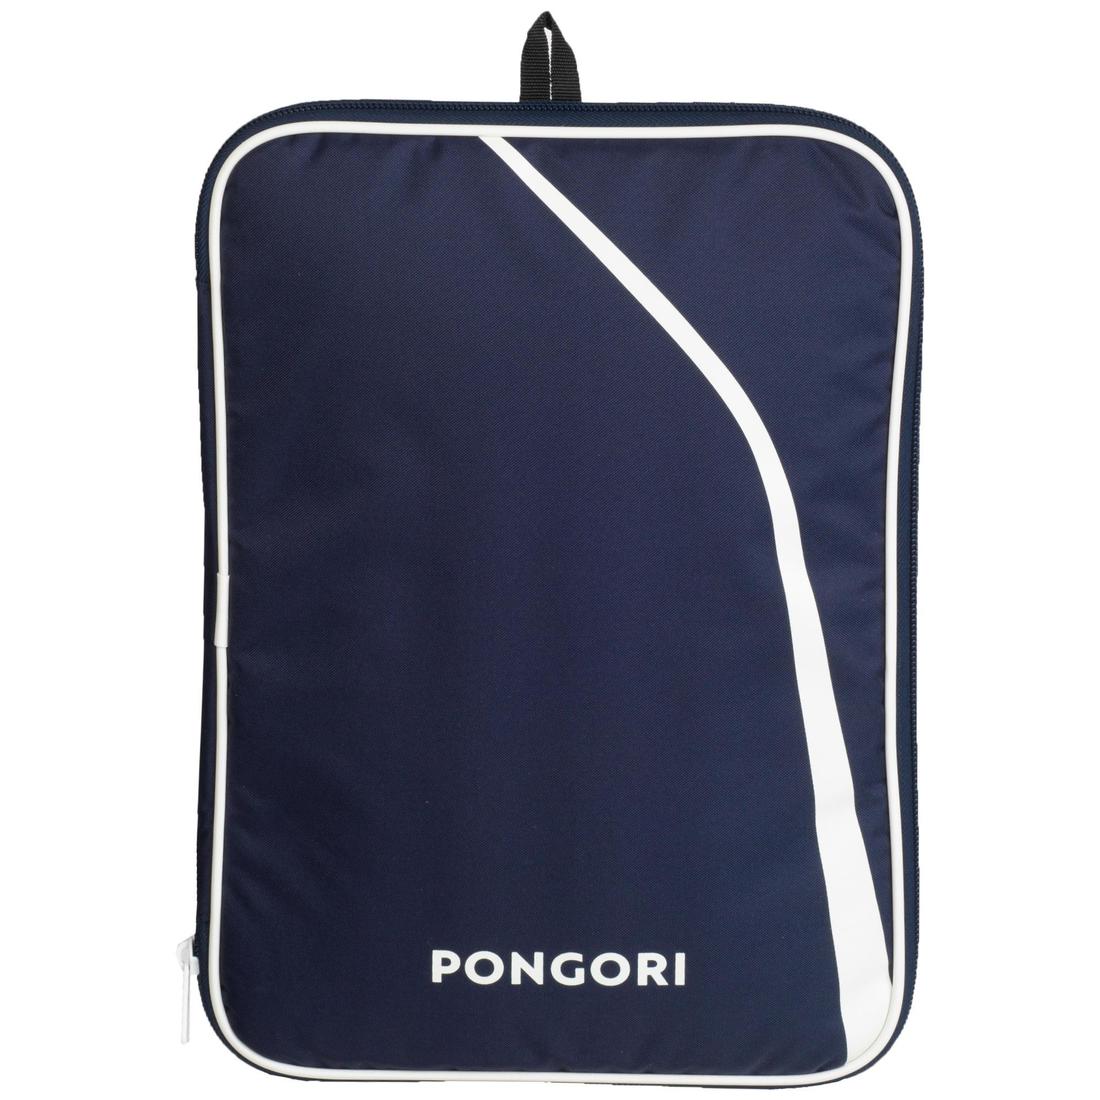 PONGORI(ポンゴリ) 卓球 ラケット 900 ペンハンド カバー付